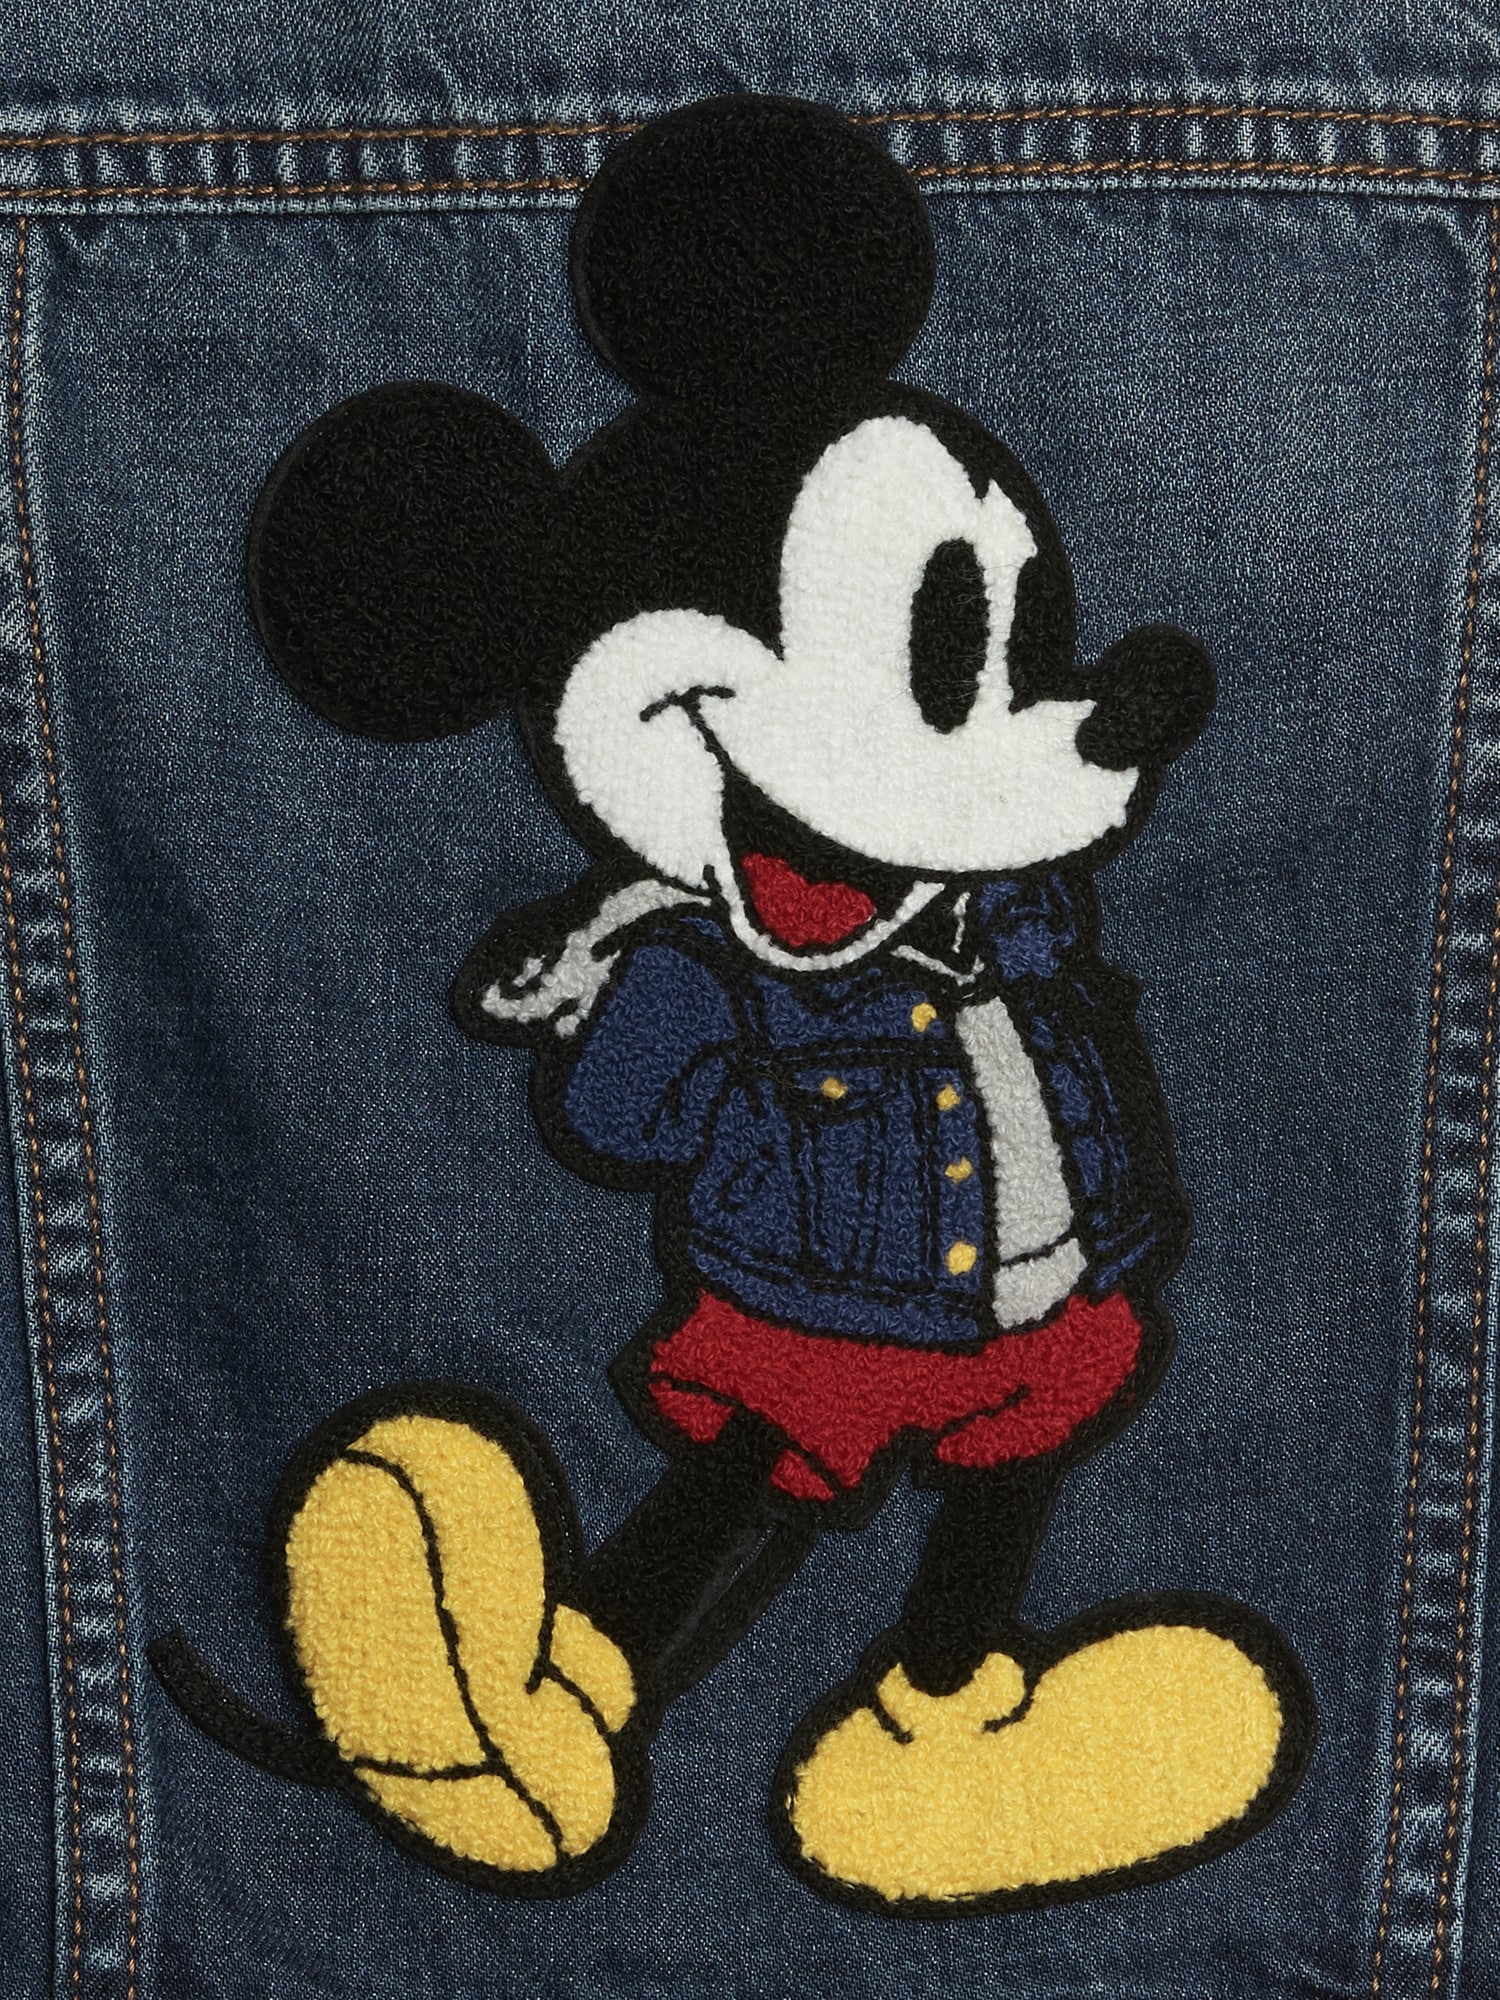 mickey mouse denim jacket gap